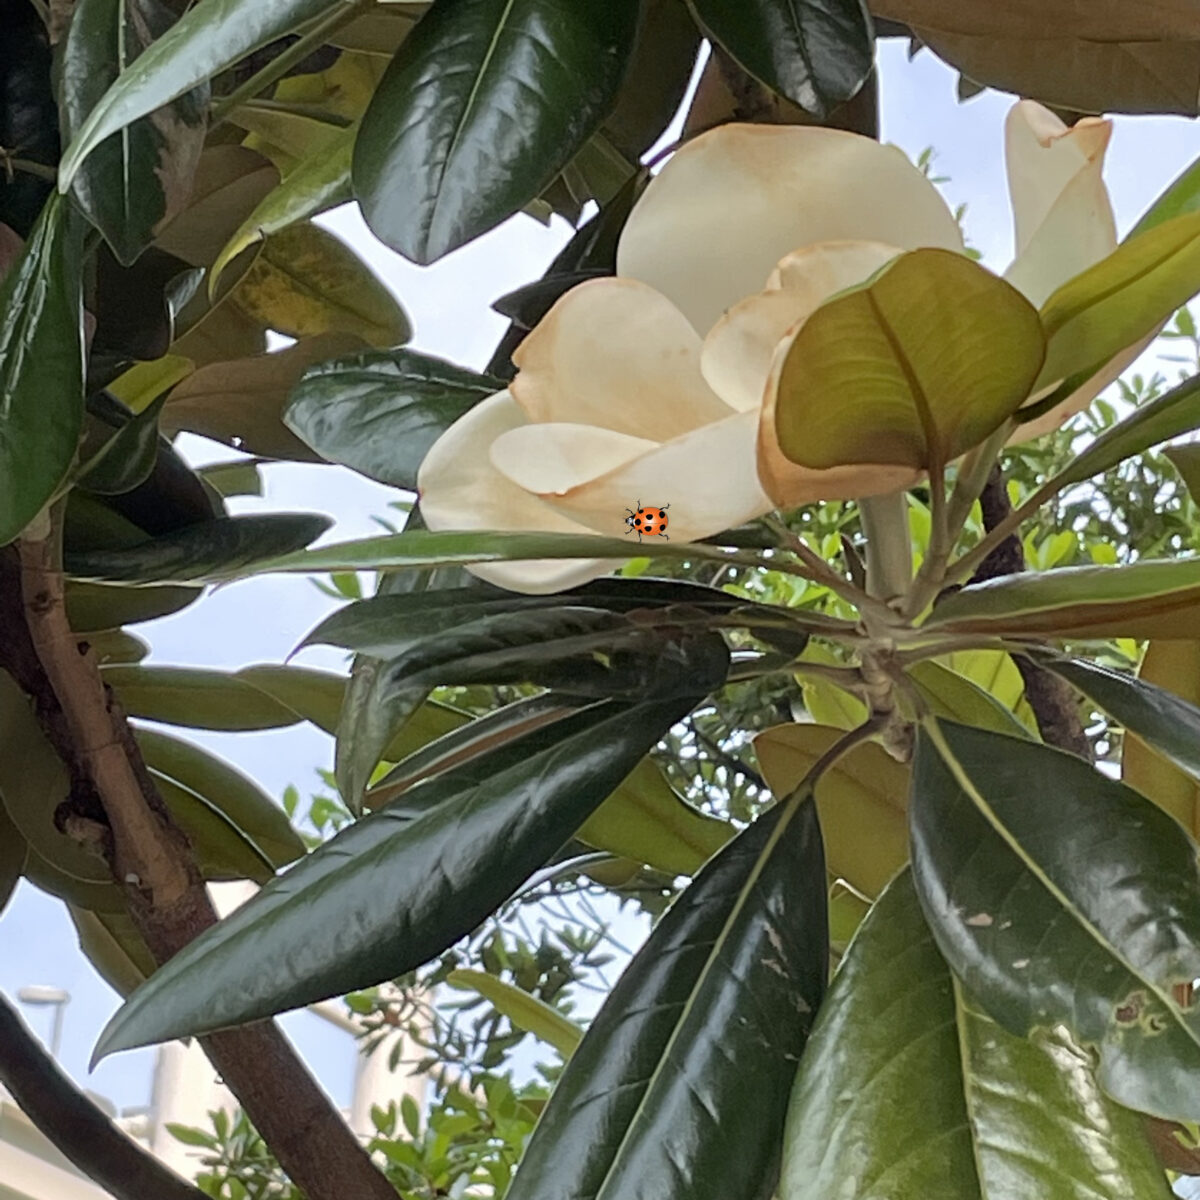 タイサンボク 樹木の花として国内最大級です ホオノキやユリノキの花も似ています アメリカ合衆国南部を象徴する花木とされミシシッピ州とルイジアナ州の州花 です